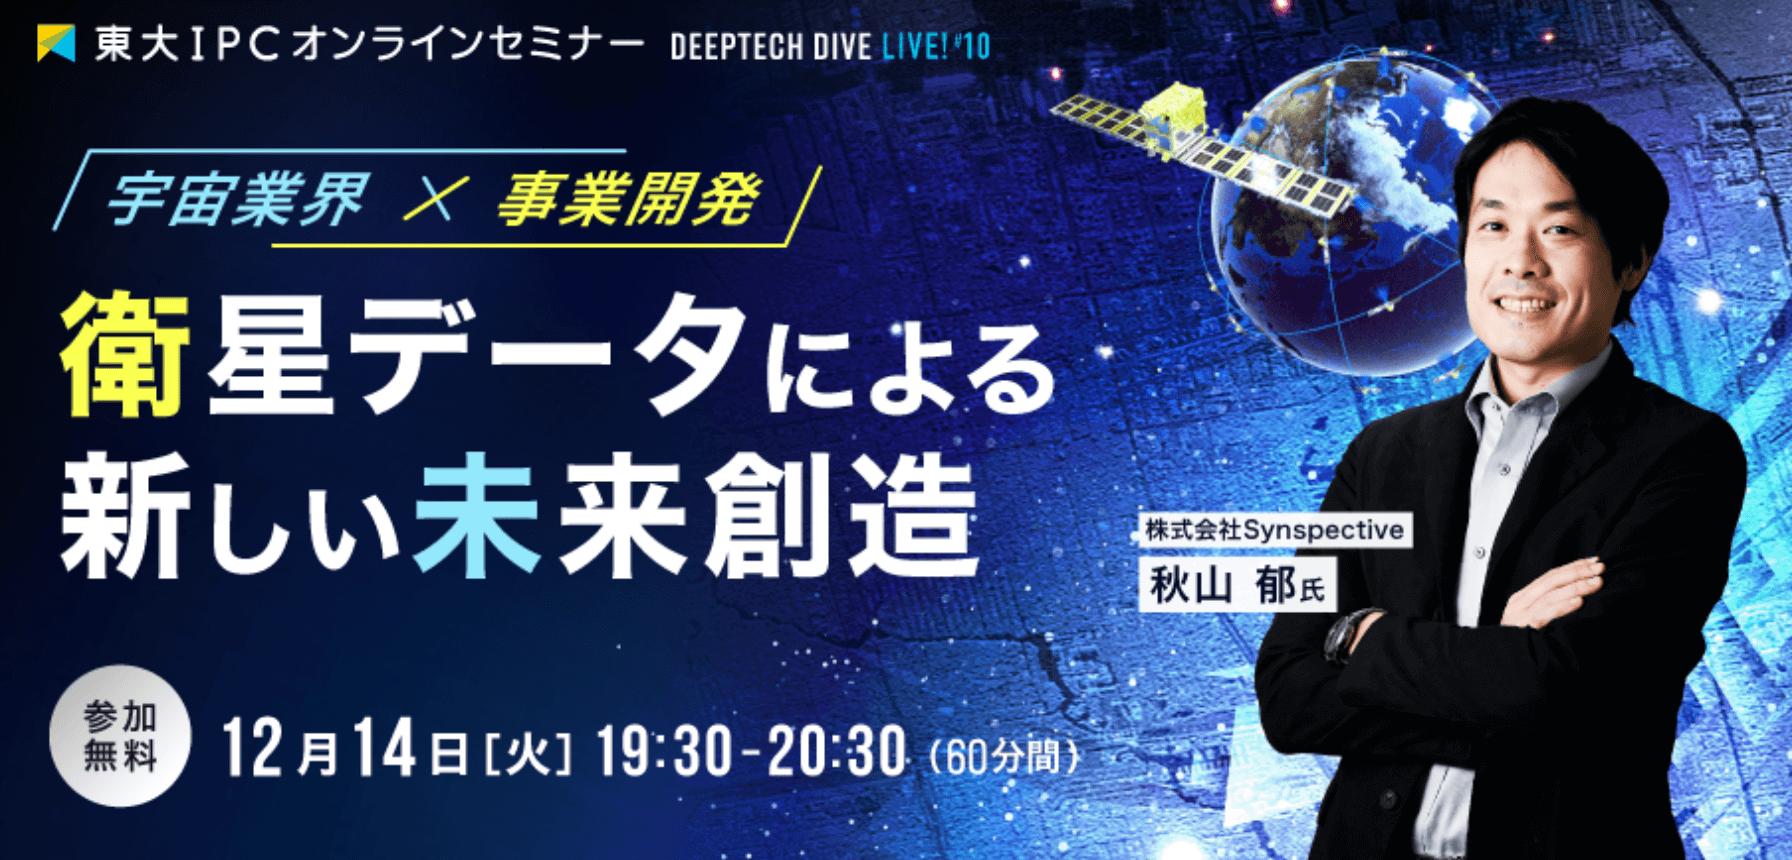 東大IPC無料オンラインセミナー DEEP TECH DIVE Live! #10 衛星データによる新しい未来創造